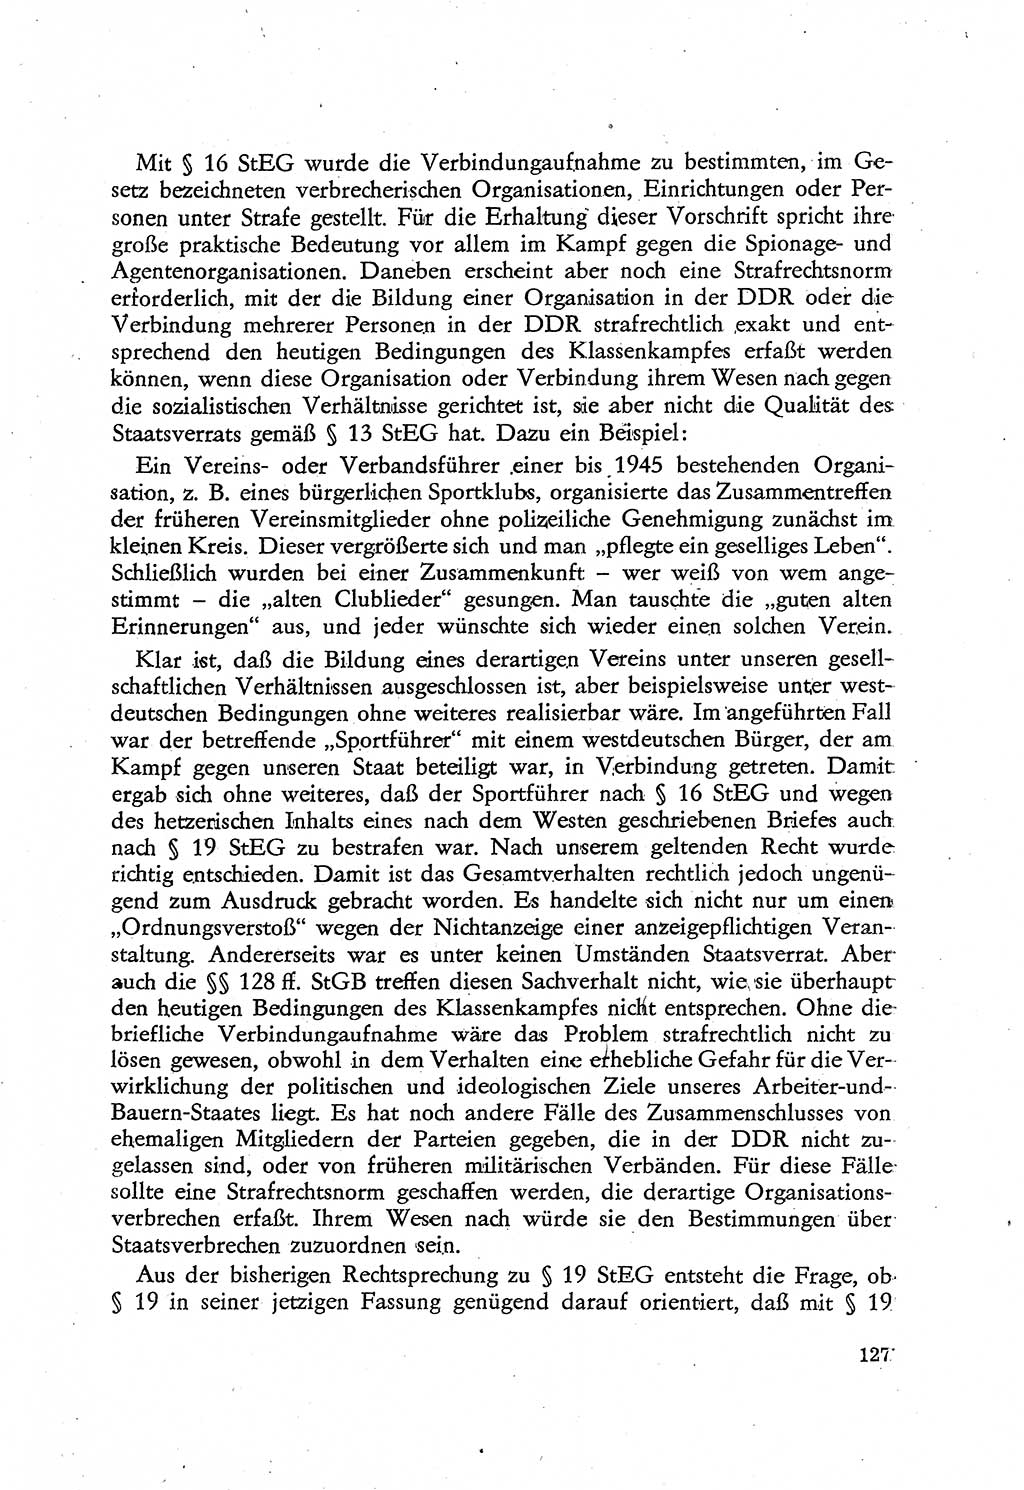 Beiträge zum Strafrecht [Deutsche Demokratische Republik (DDR)], Staatsverbrechen 1959, Seite 127 (Beitr. Strafr. DDR St.-Verbr. 1959, S. 127)